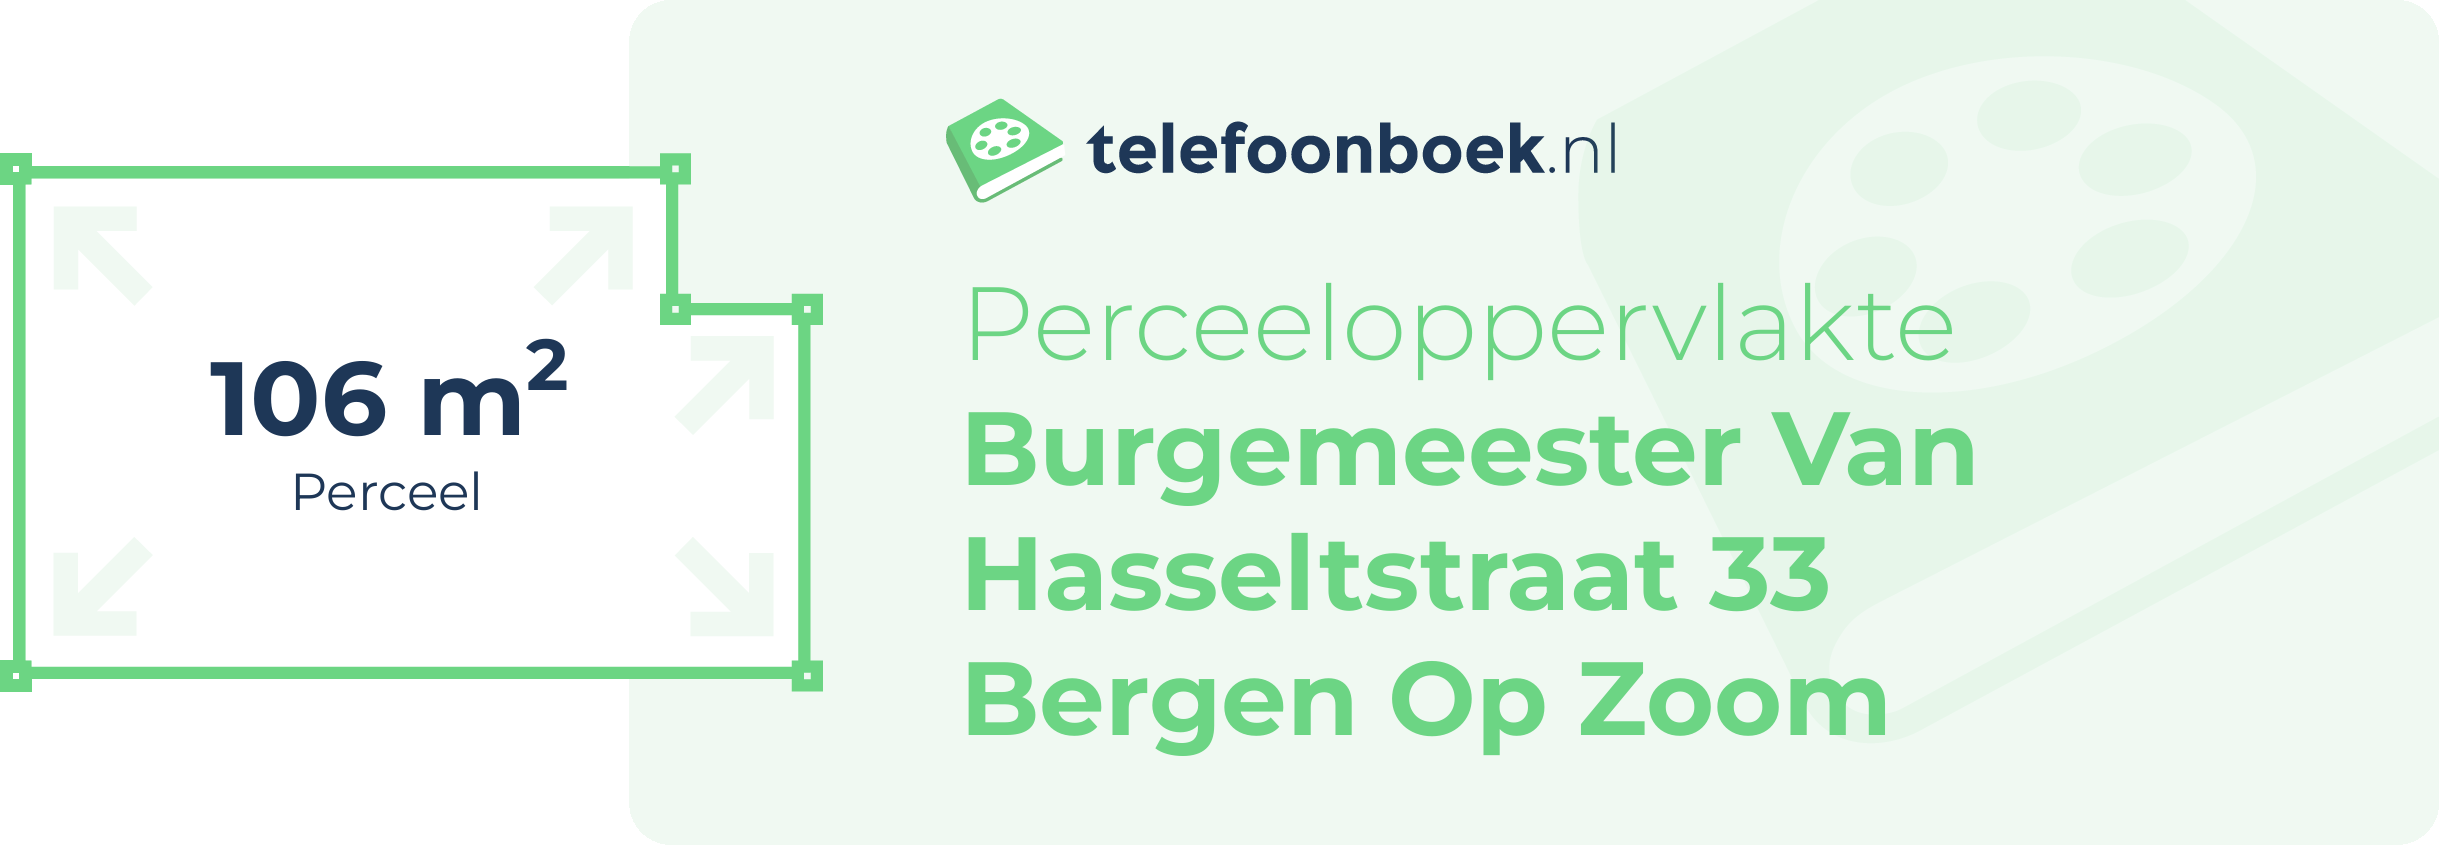 Perceeloppervlakte Burgemeester Van Hasseltstraat 33 Bergen Op Zoom